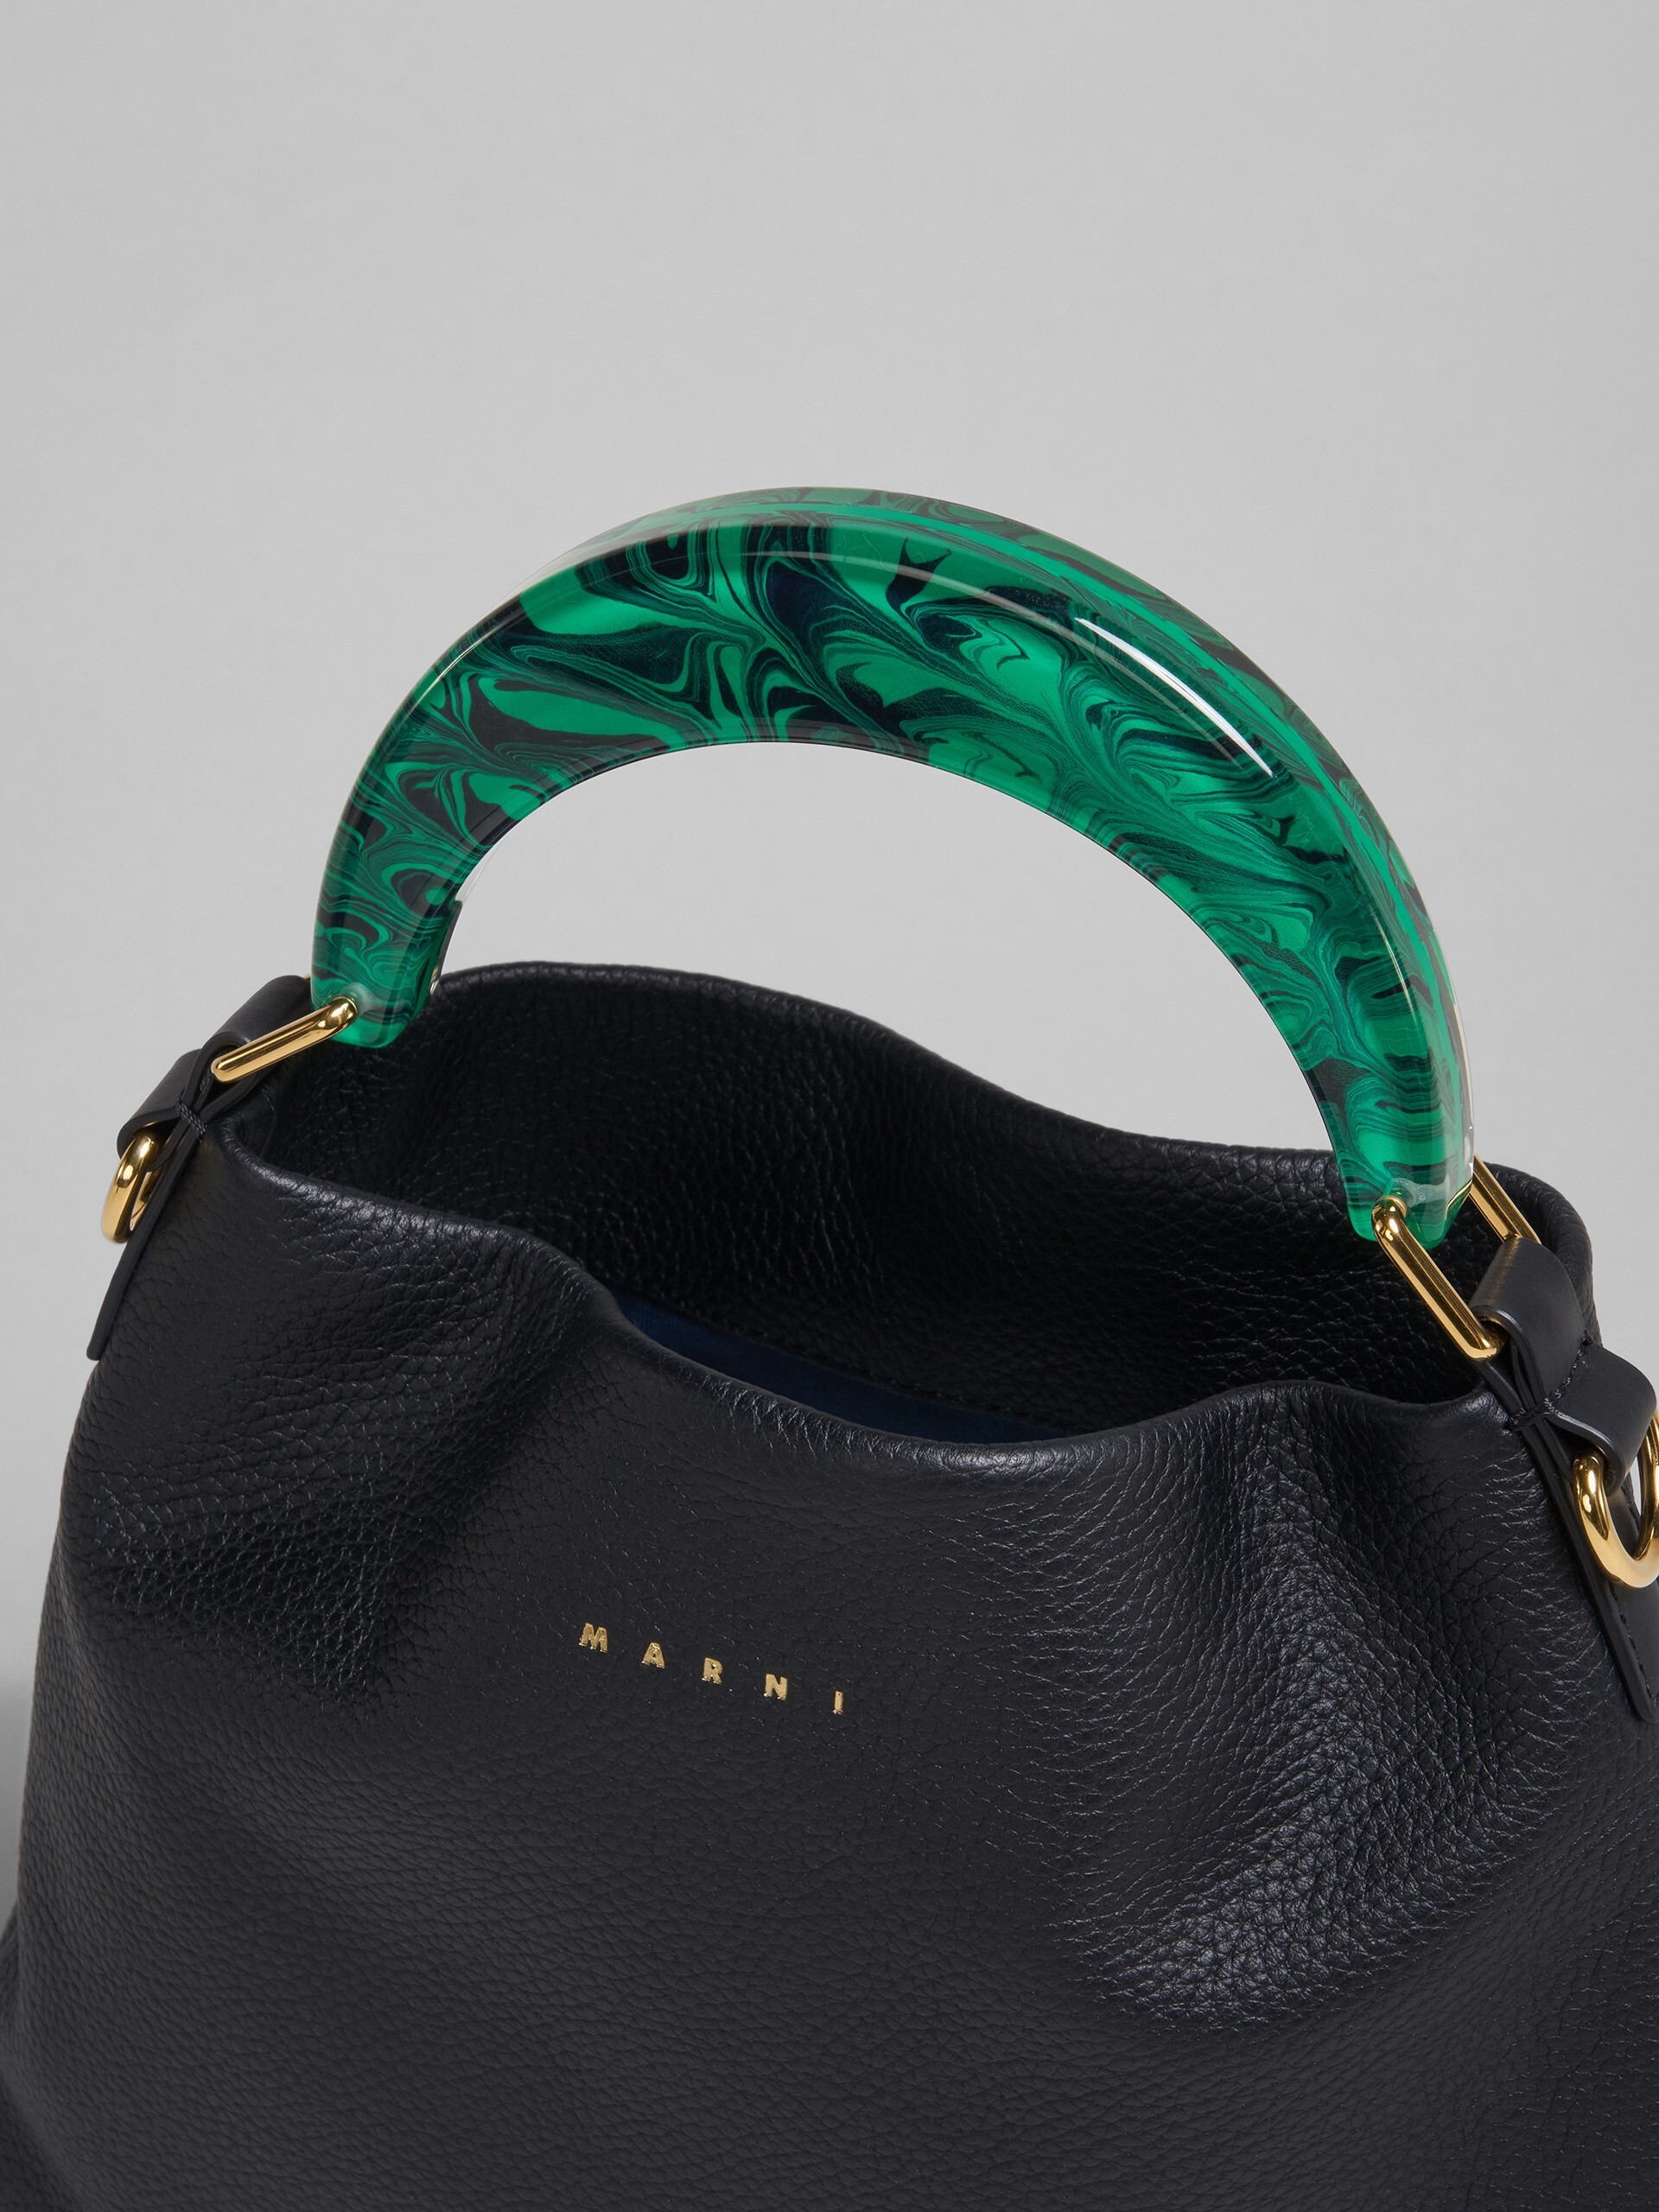 Venice Small Bag in black leather - Shoulder Bag - Image 4